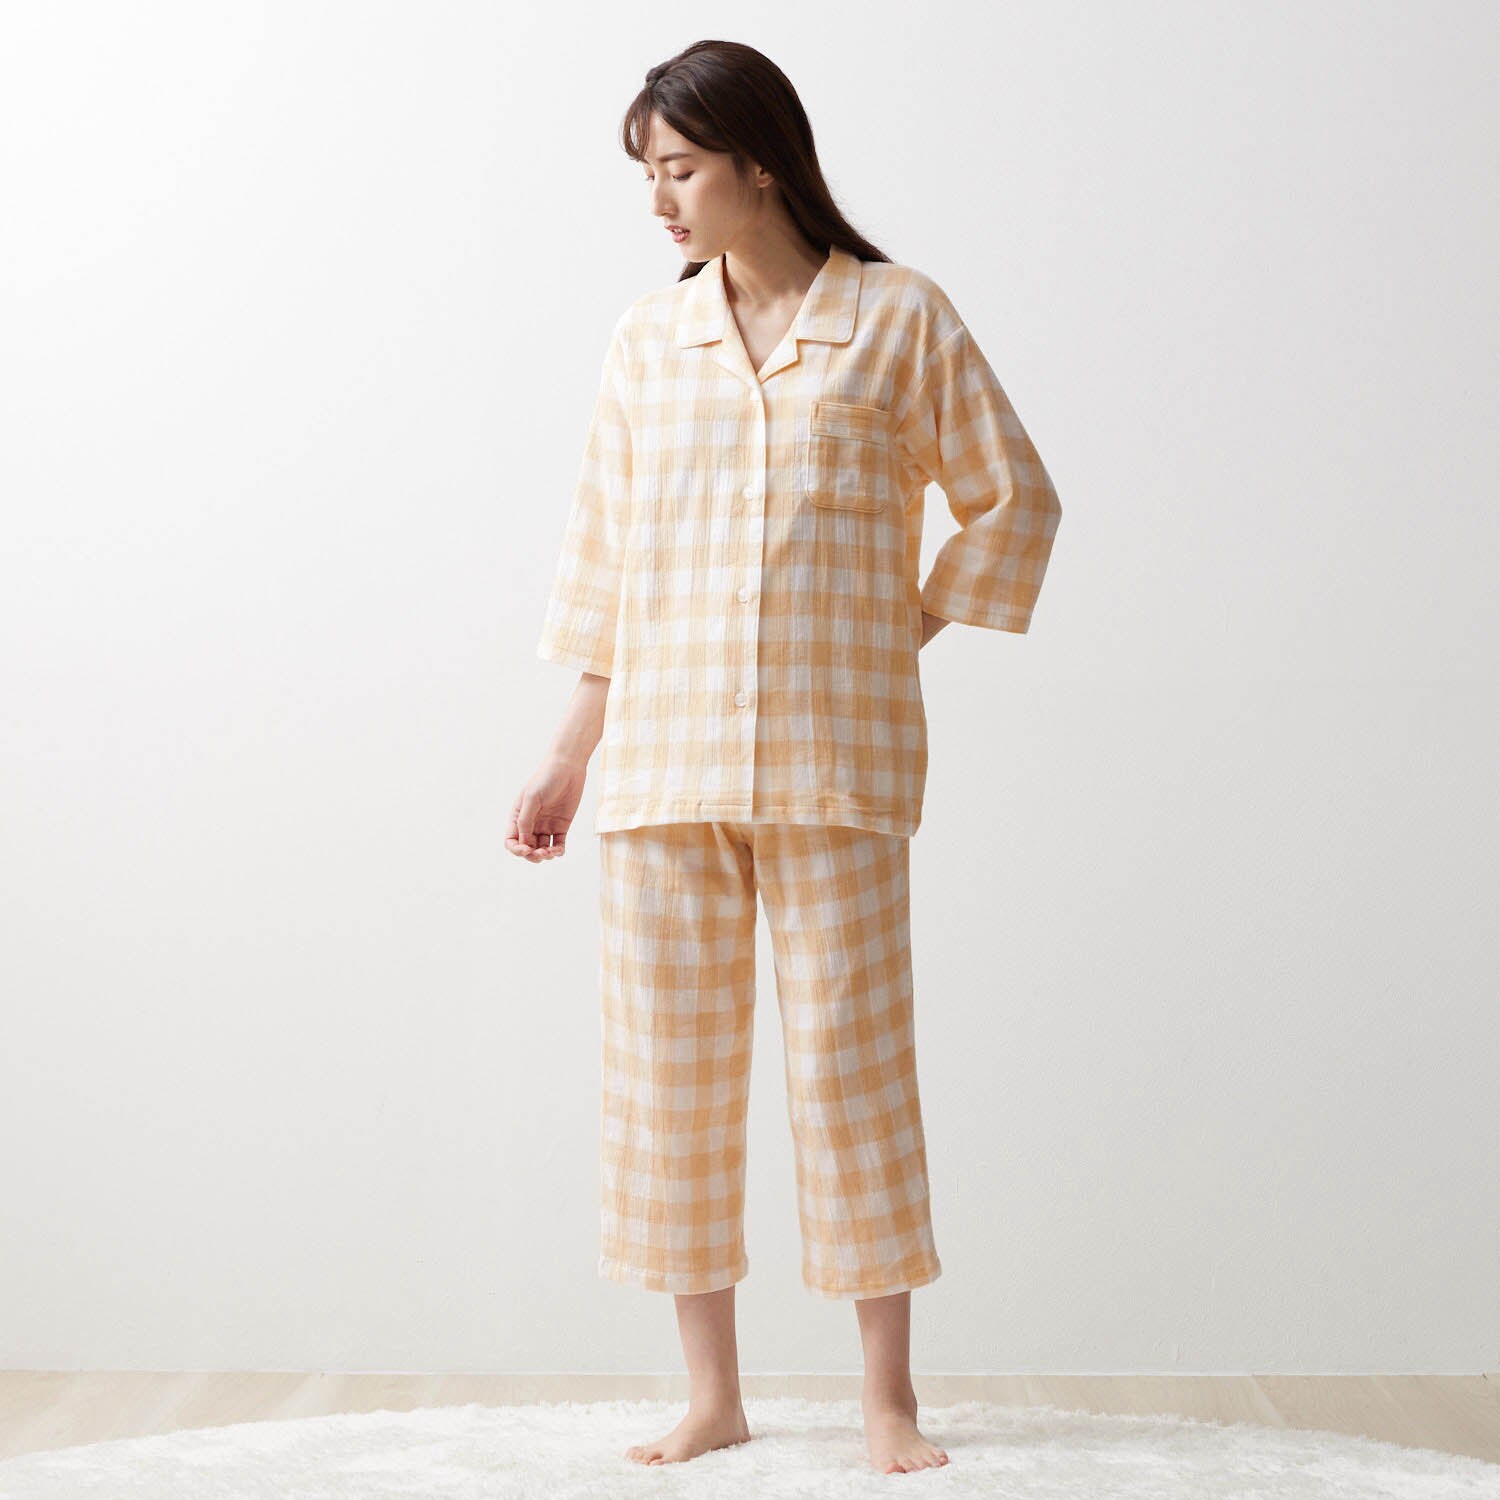 通販生活 LOFTY ガーゼの八分袖パジャマ M-L 日本製 藤色 - ルーム 